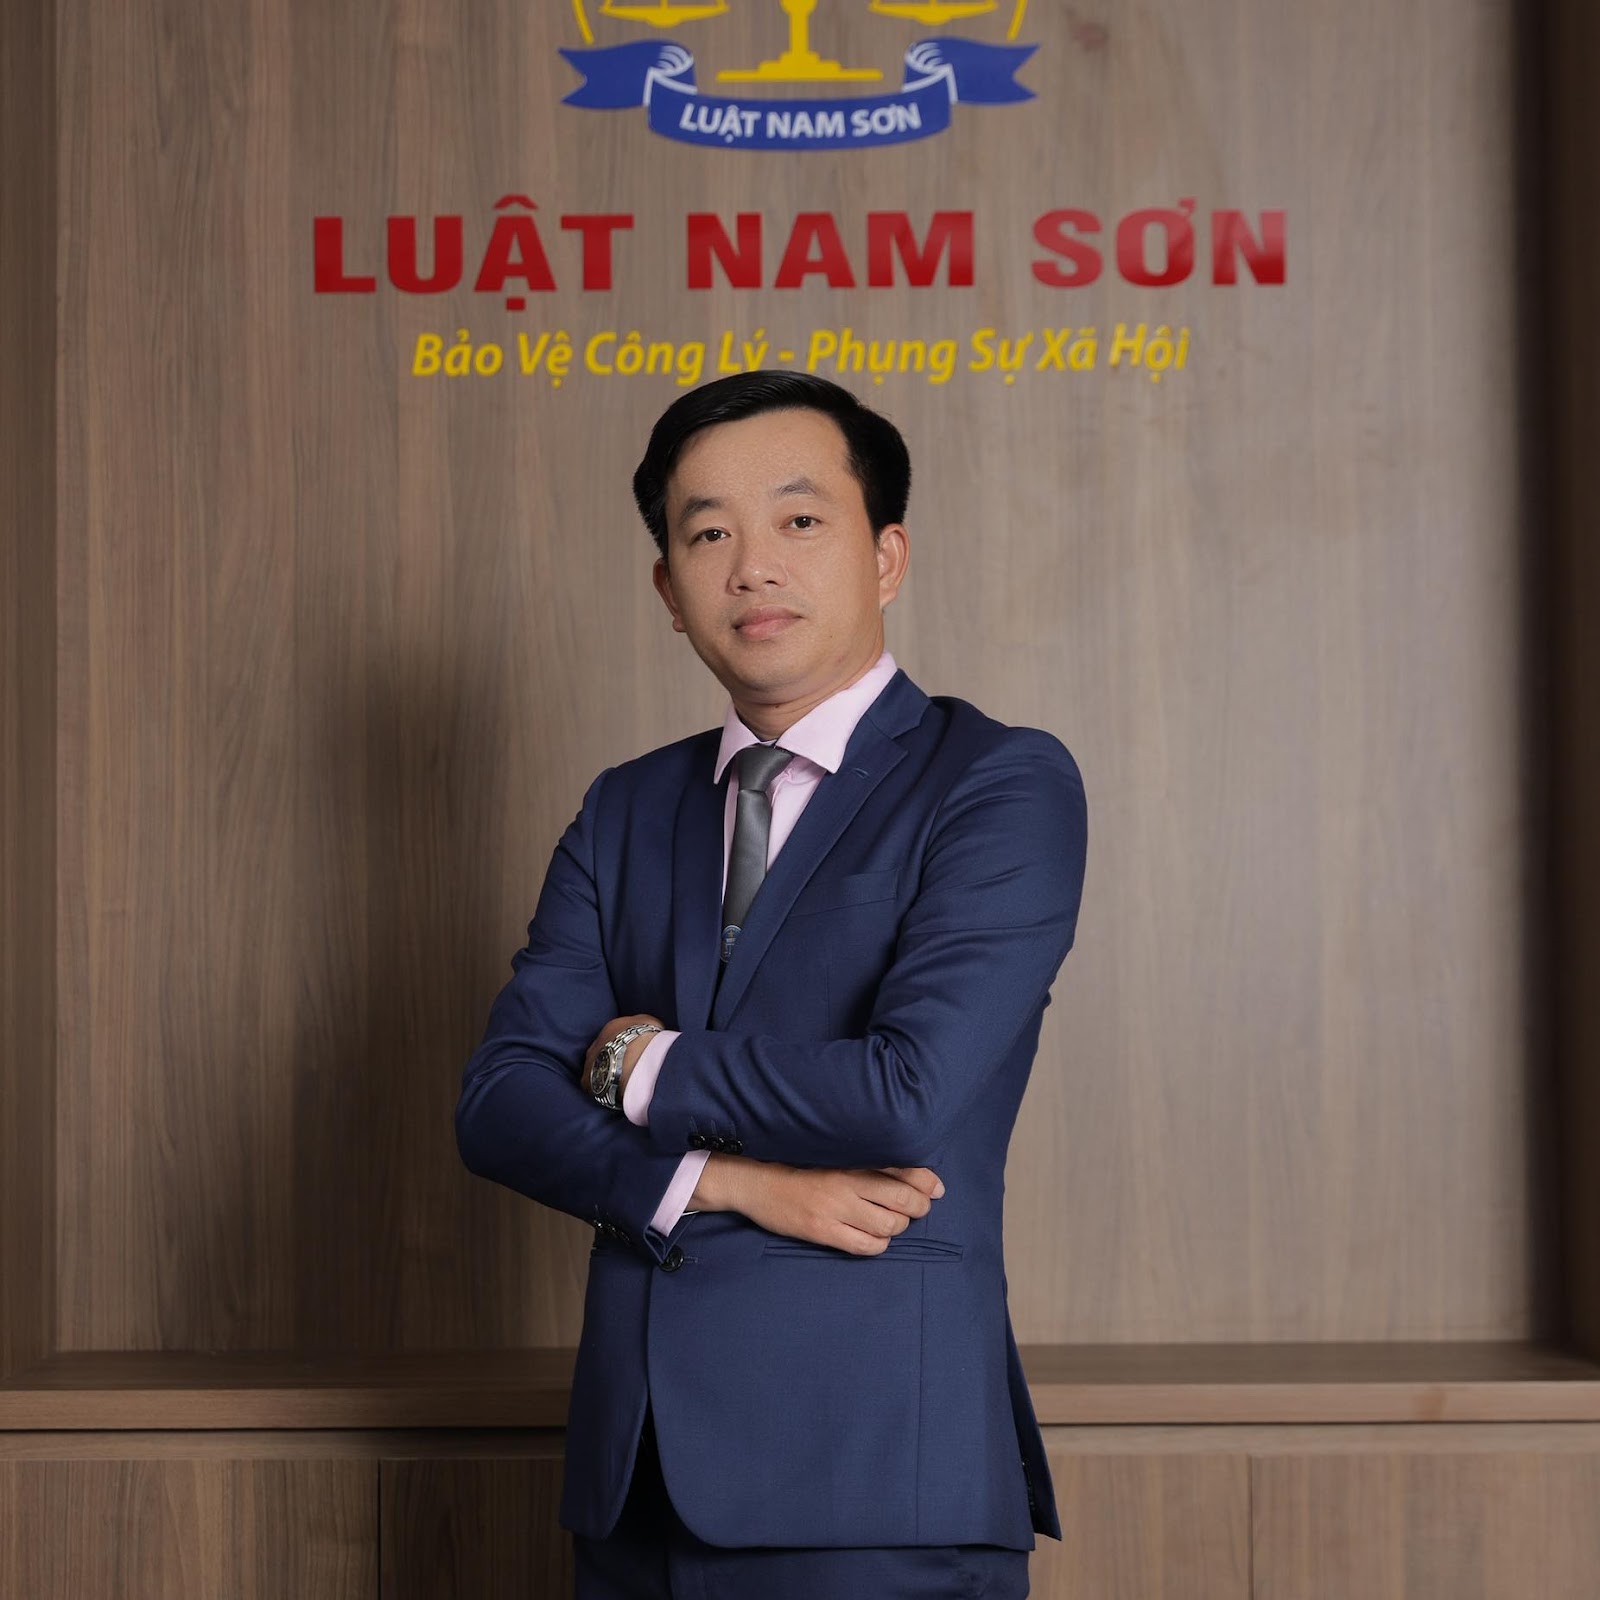 Luật sư Nguyễn Thành Trung hoạt động trong lĩnh vực dịch vụ pháp lý về đất đai, di chúc, thừa kế và hôn nhân gia đình